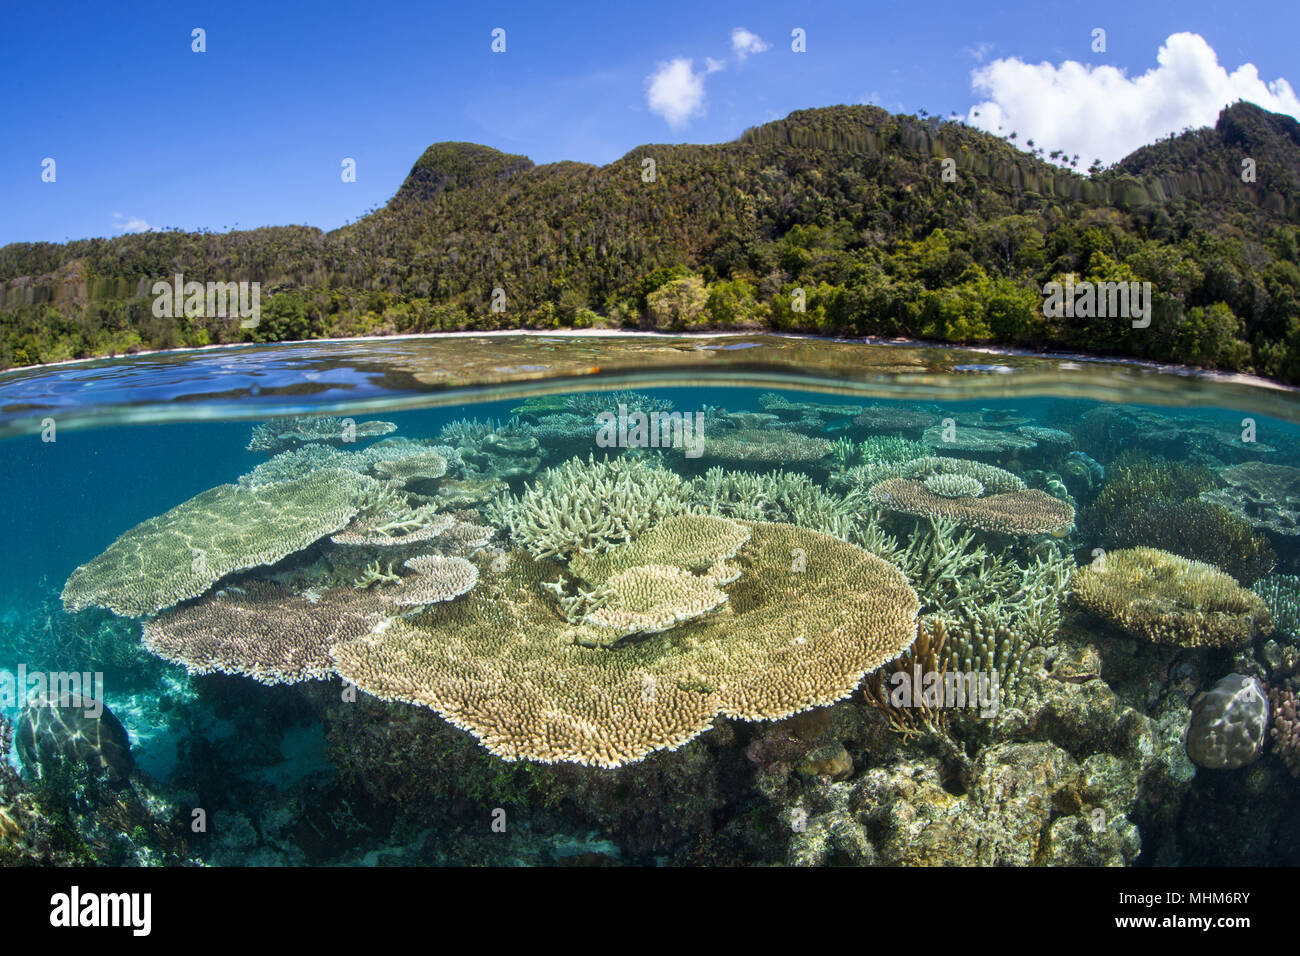 Schöne riffbildende Korallen wachsen auf ein flaches Riff in Raja Ampat, Indonesien. Diese Region ist für seine unglaubliche Artenvielfalt des Meeres bekannt. Stockfoto